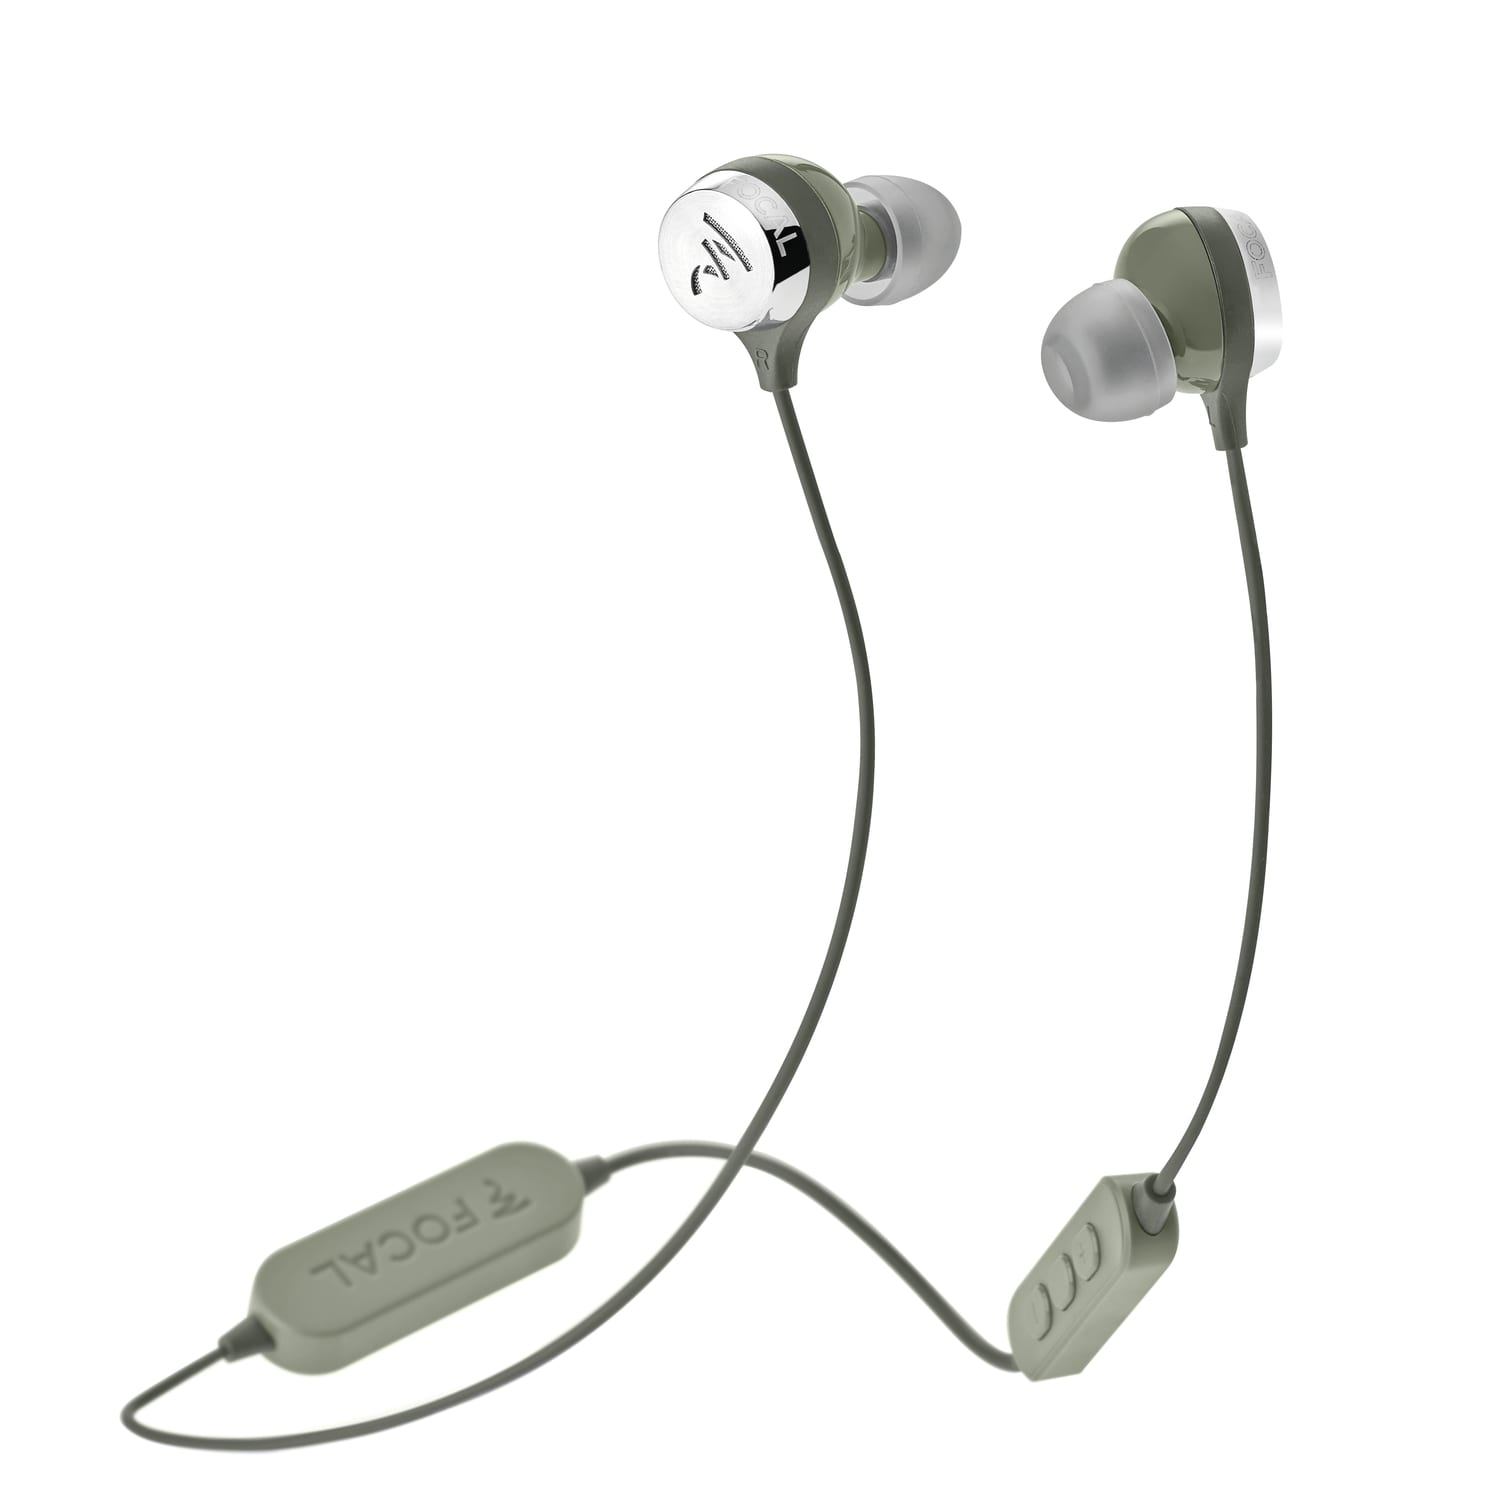 Focal Sphear Wireless groen - In ear oordopjes